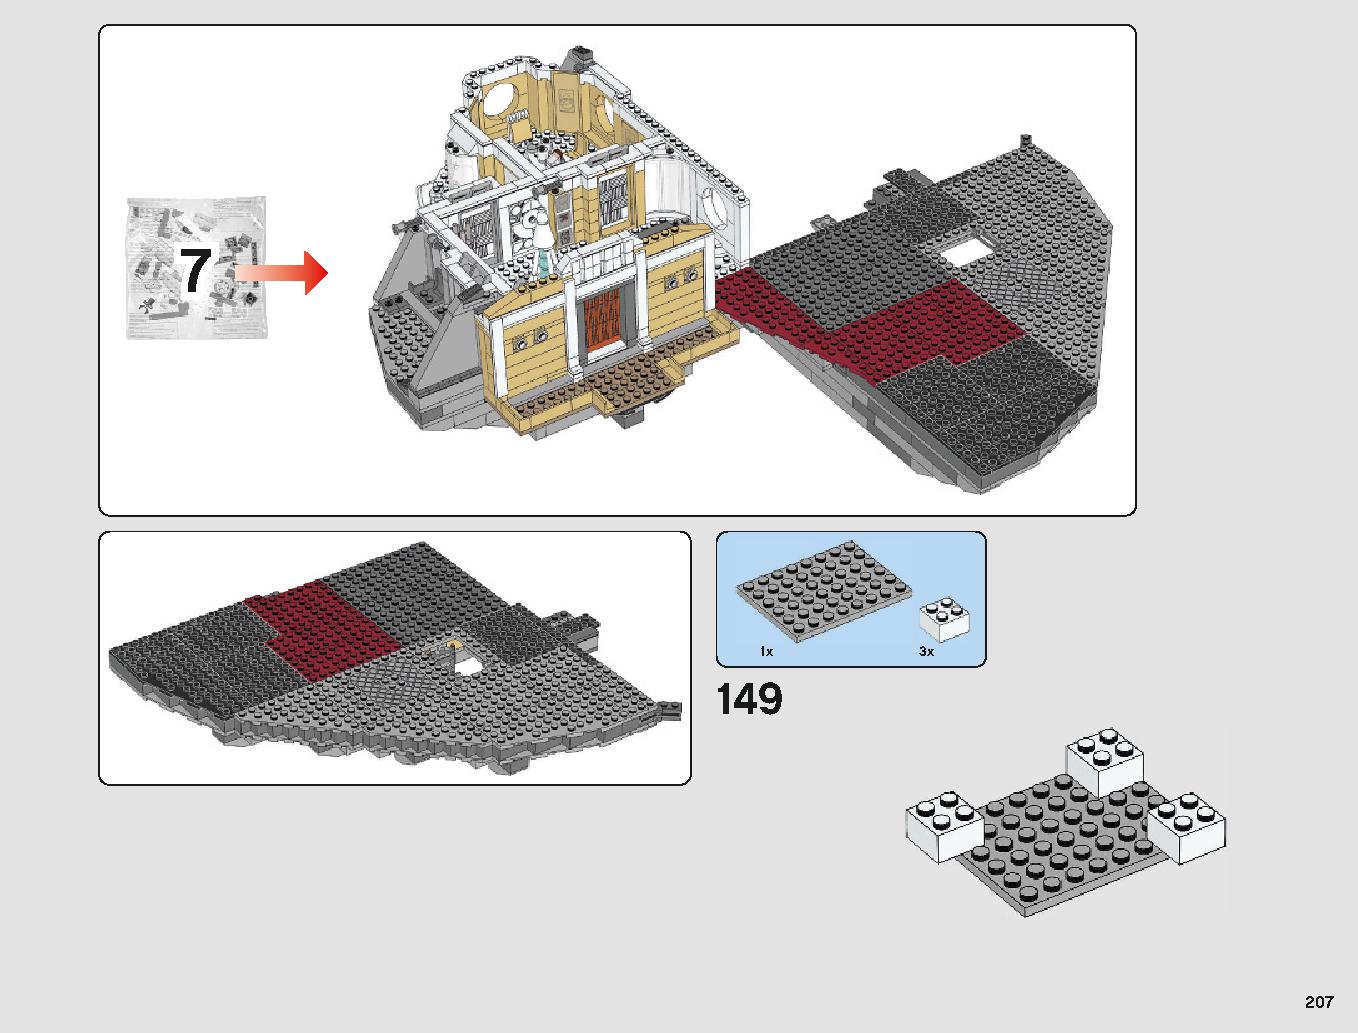 クラウド・シティ 75222 レゴの商品情報 レゴの説明書・組立方法 207 page